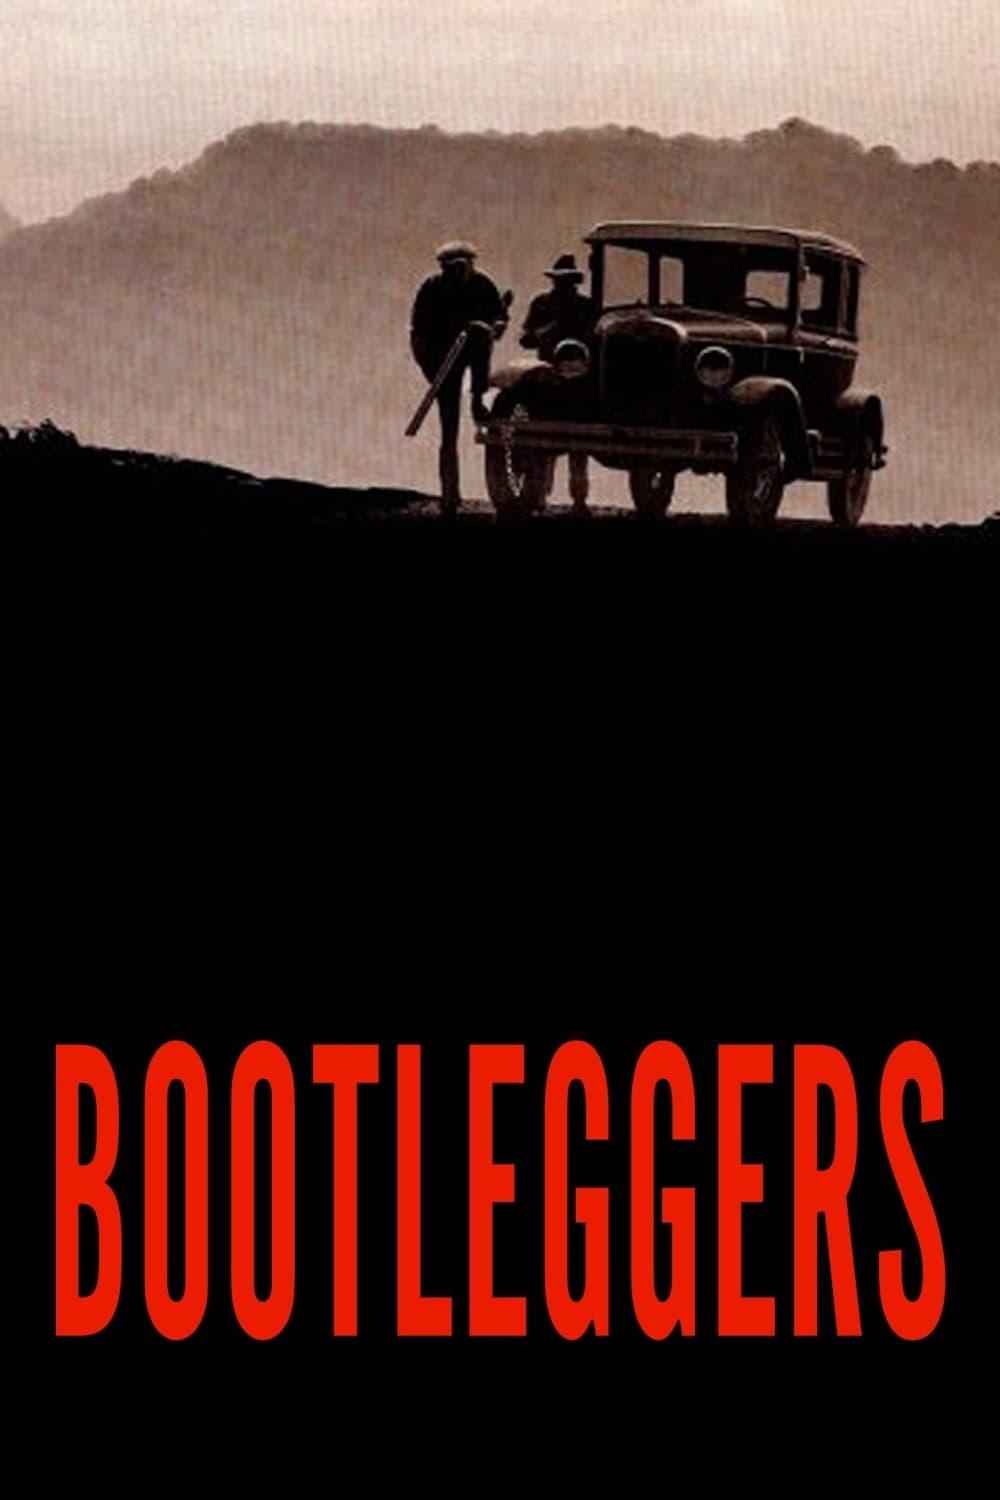 Bootleggers poster